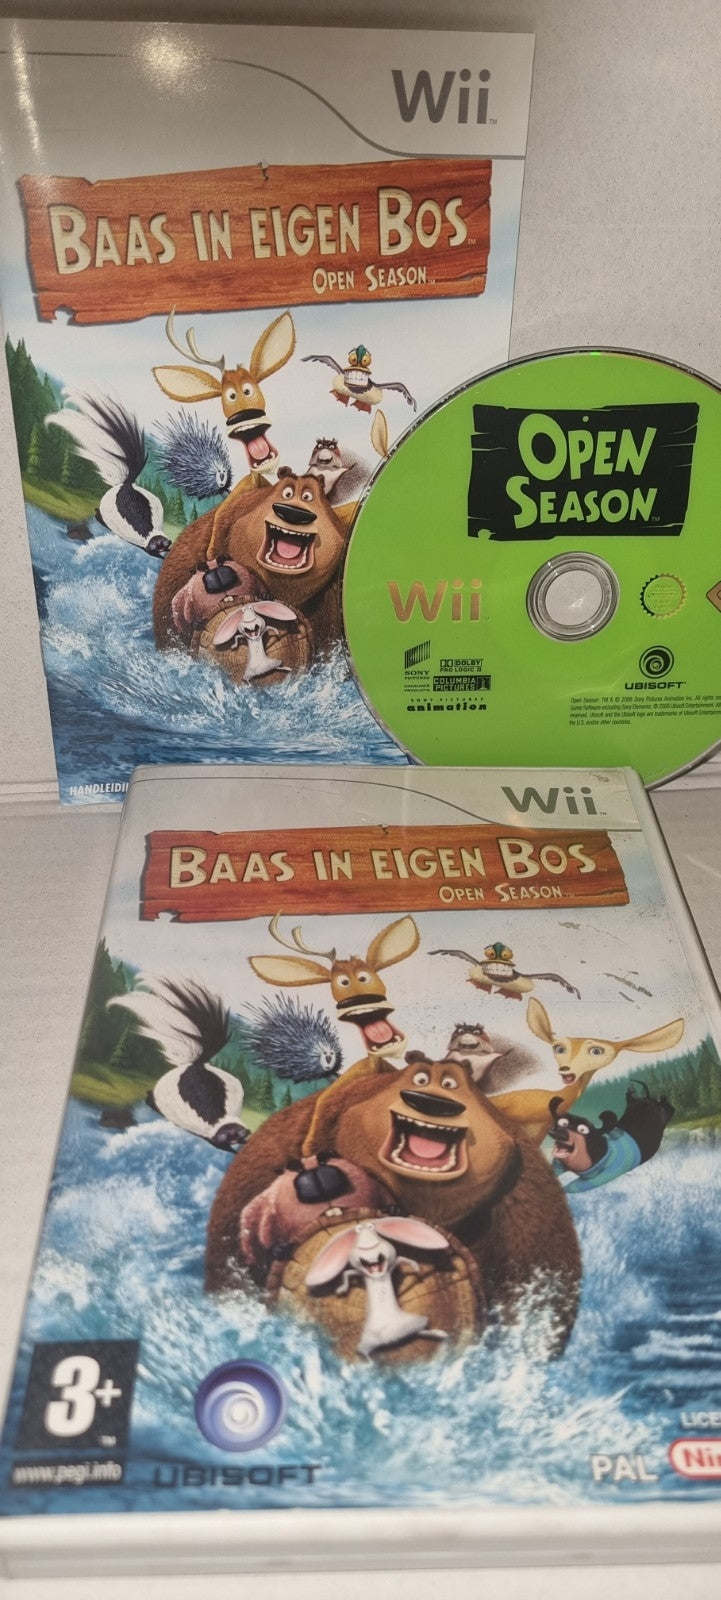 Baas in eigen bos: Open season Nintendo Wii